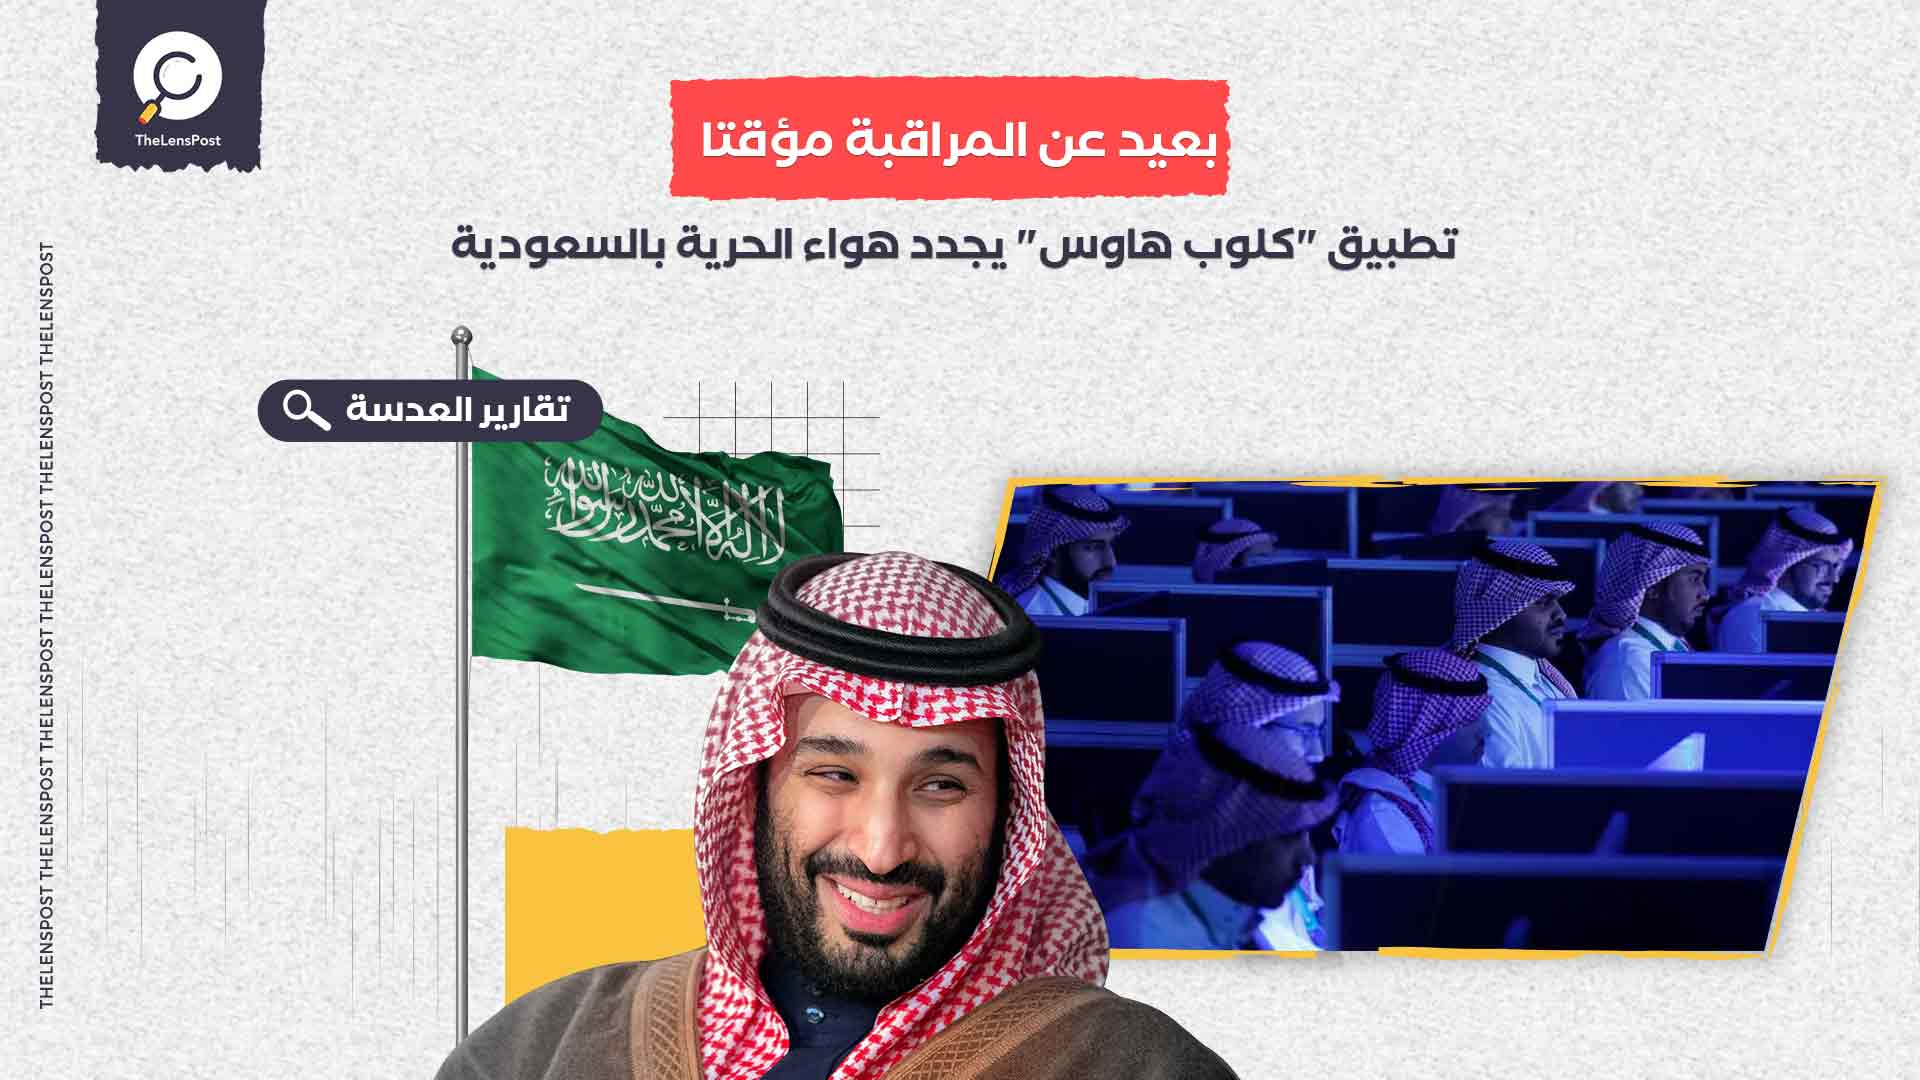 بعيد عن المراقبة مؤقتا.. تطبيق "كلوب هاوس" يجدد هواء الحرية بالسعودية